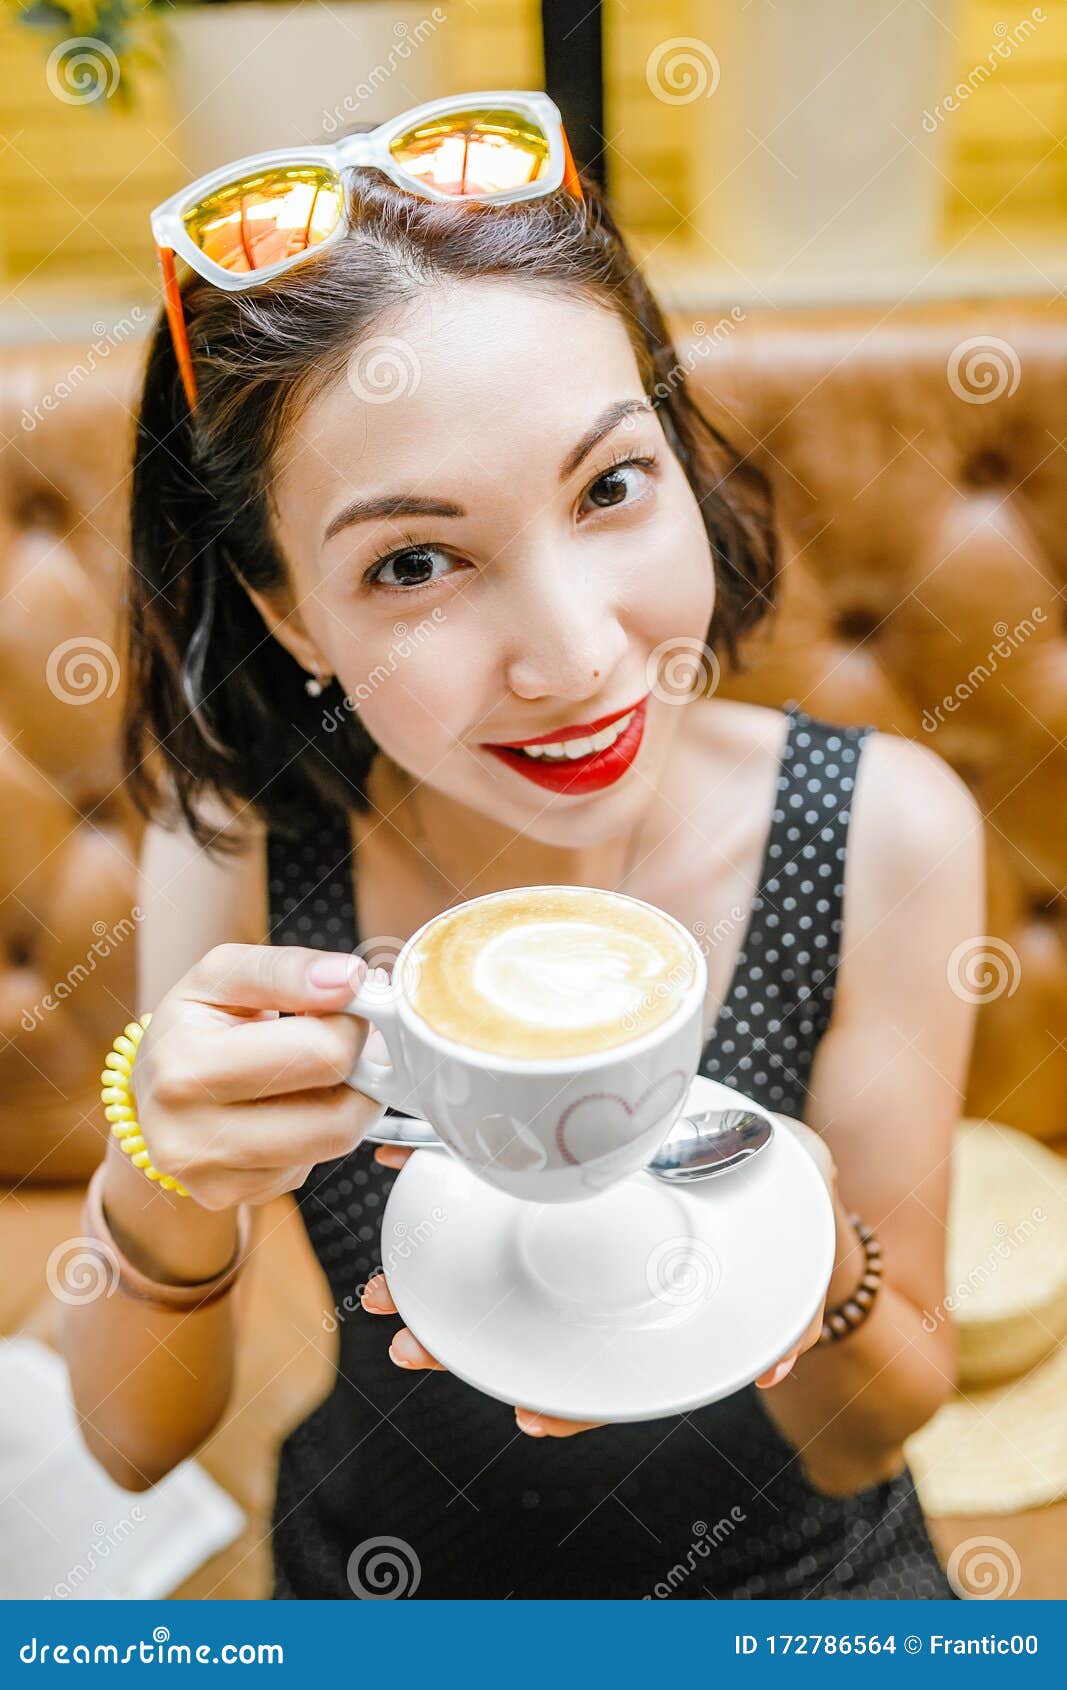 女人在咖啡馆喝咖啡图片下载 - 觅知网